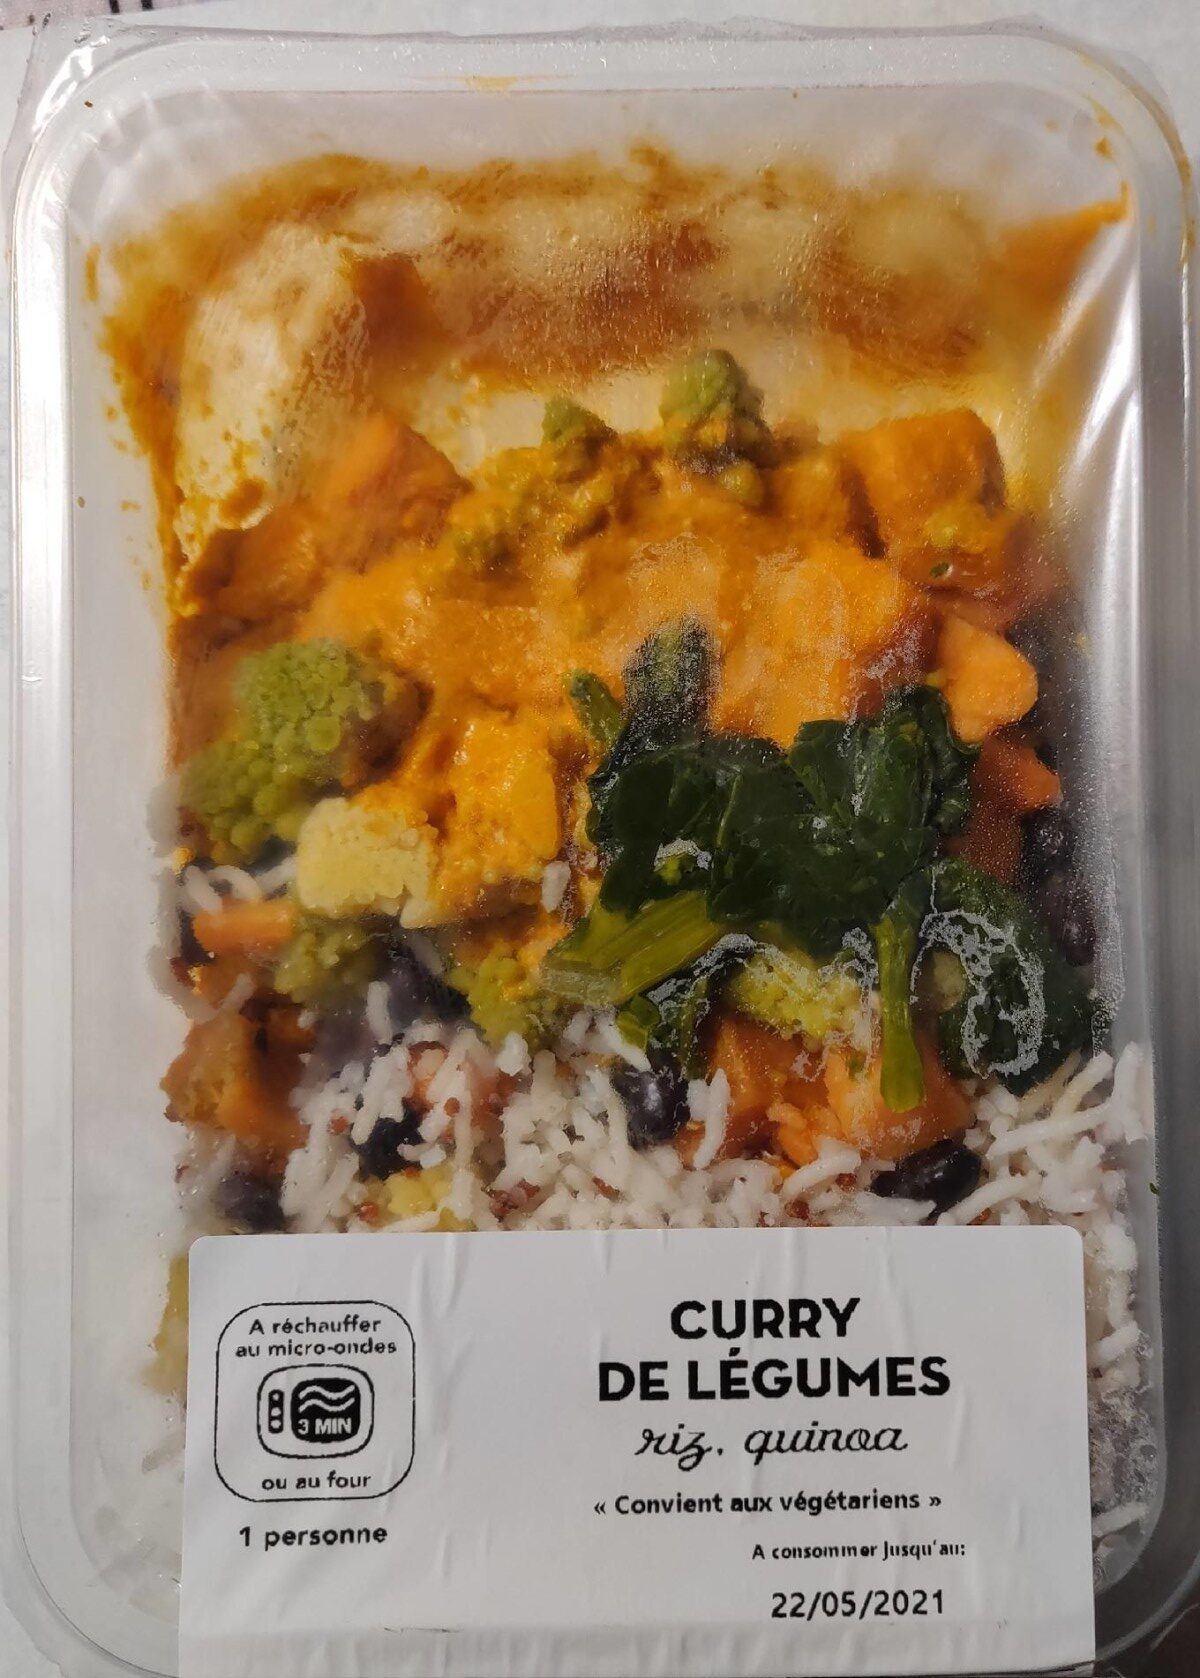 Curry de légumes - Product - fr